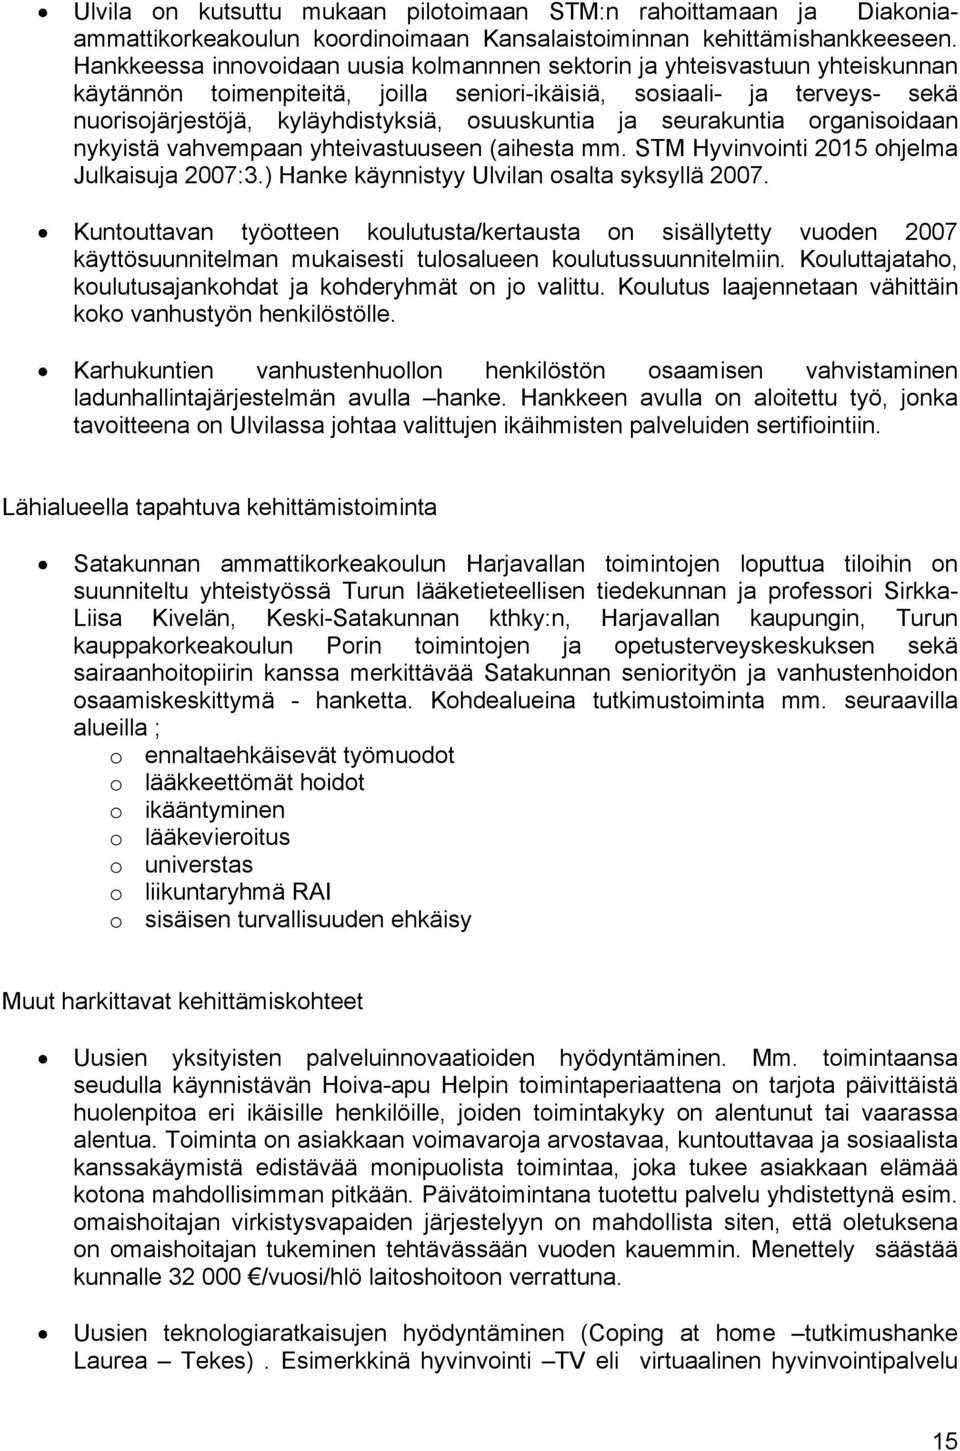 osuuskuntia ja seurakuntia organisoidaan nykyistä vahvempaan yhteivastuuseen (aihesta mm. STM Hyvinvointi 2015 ohjelma Julkaisuja 2007:3.) Hanke käynnistyy Ulvilan osalta syksyllä 2007.